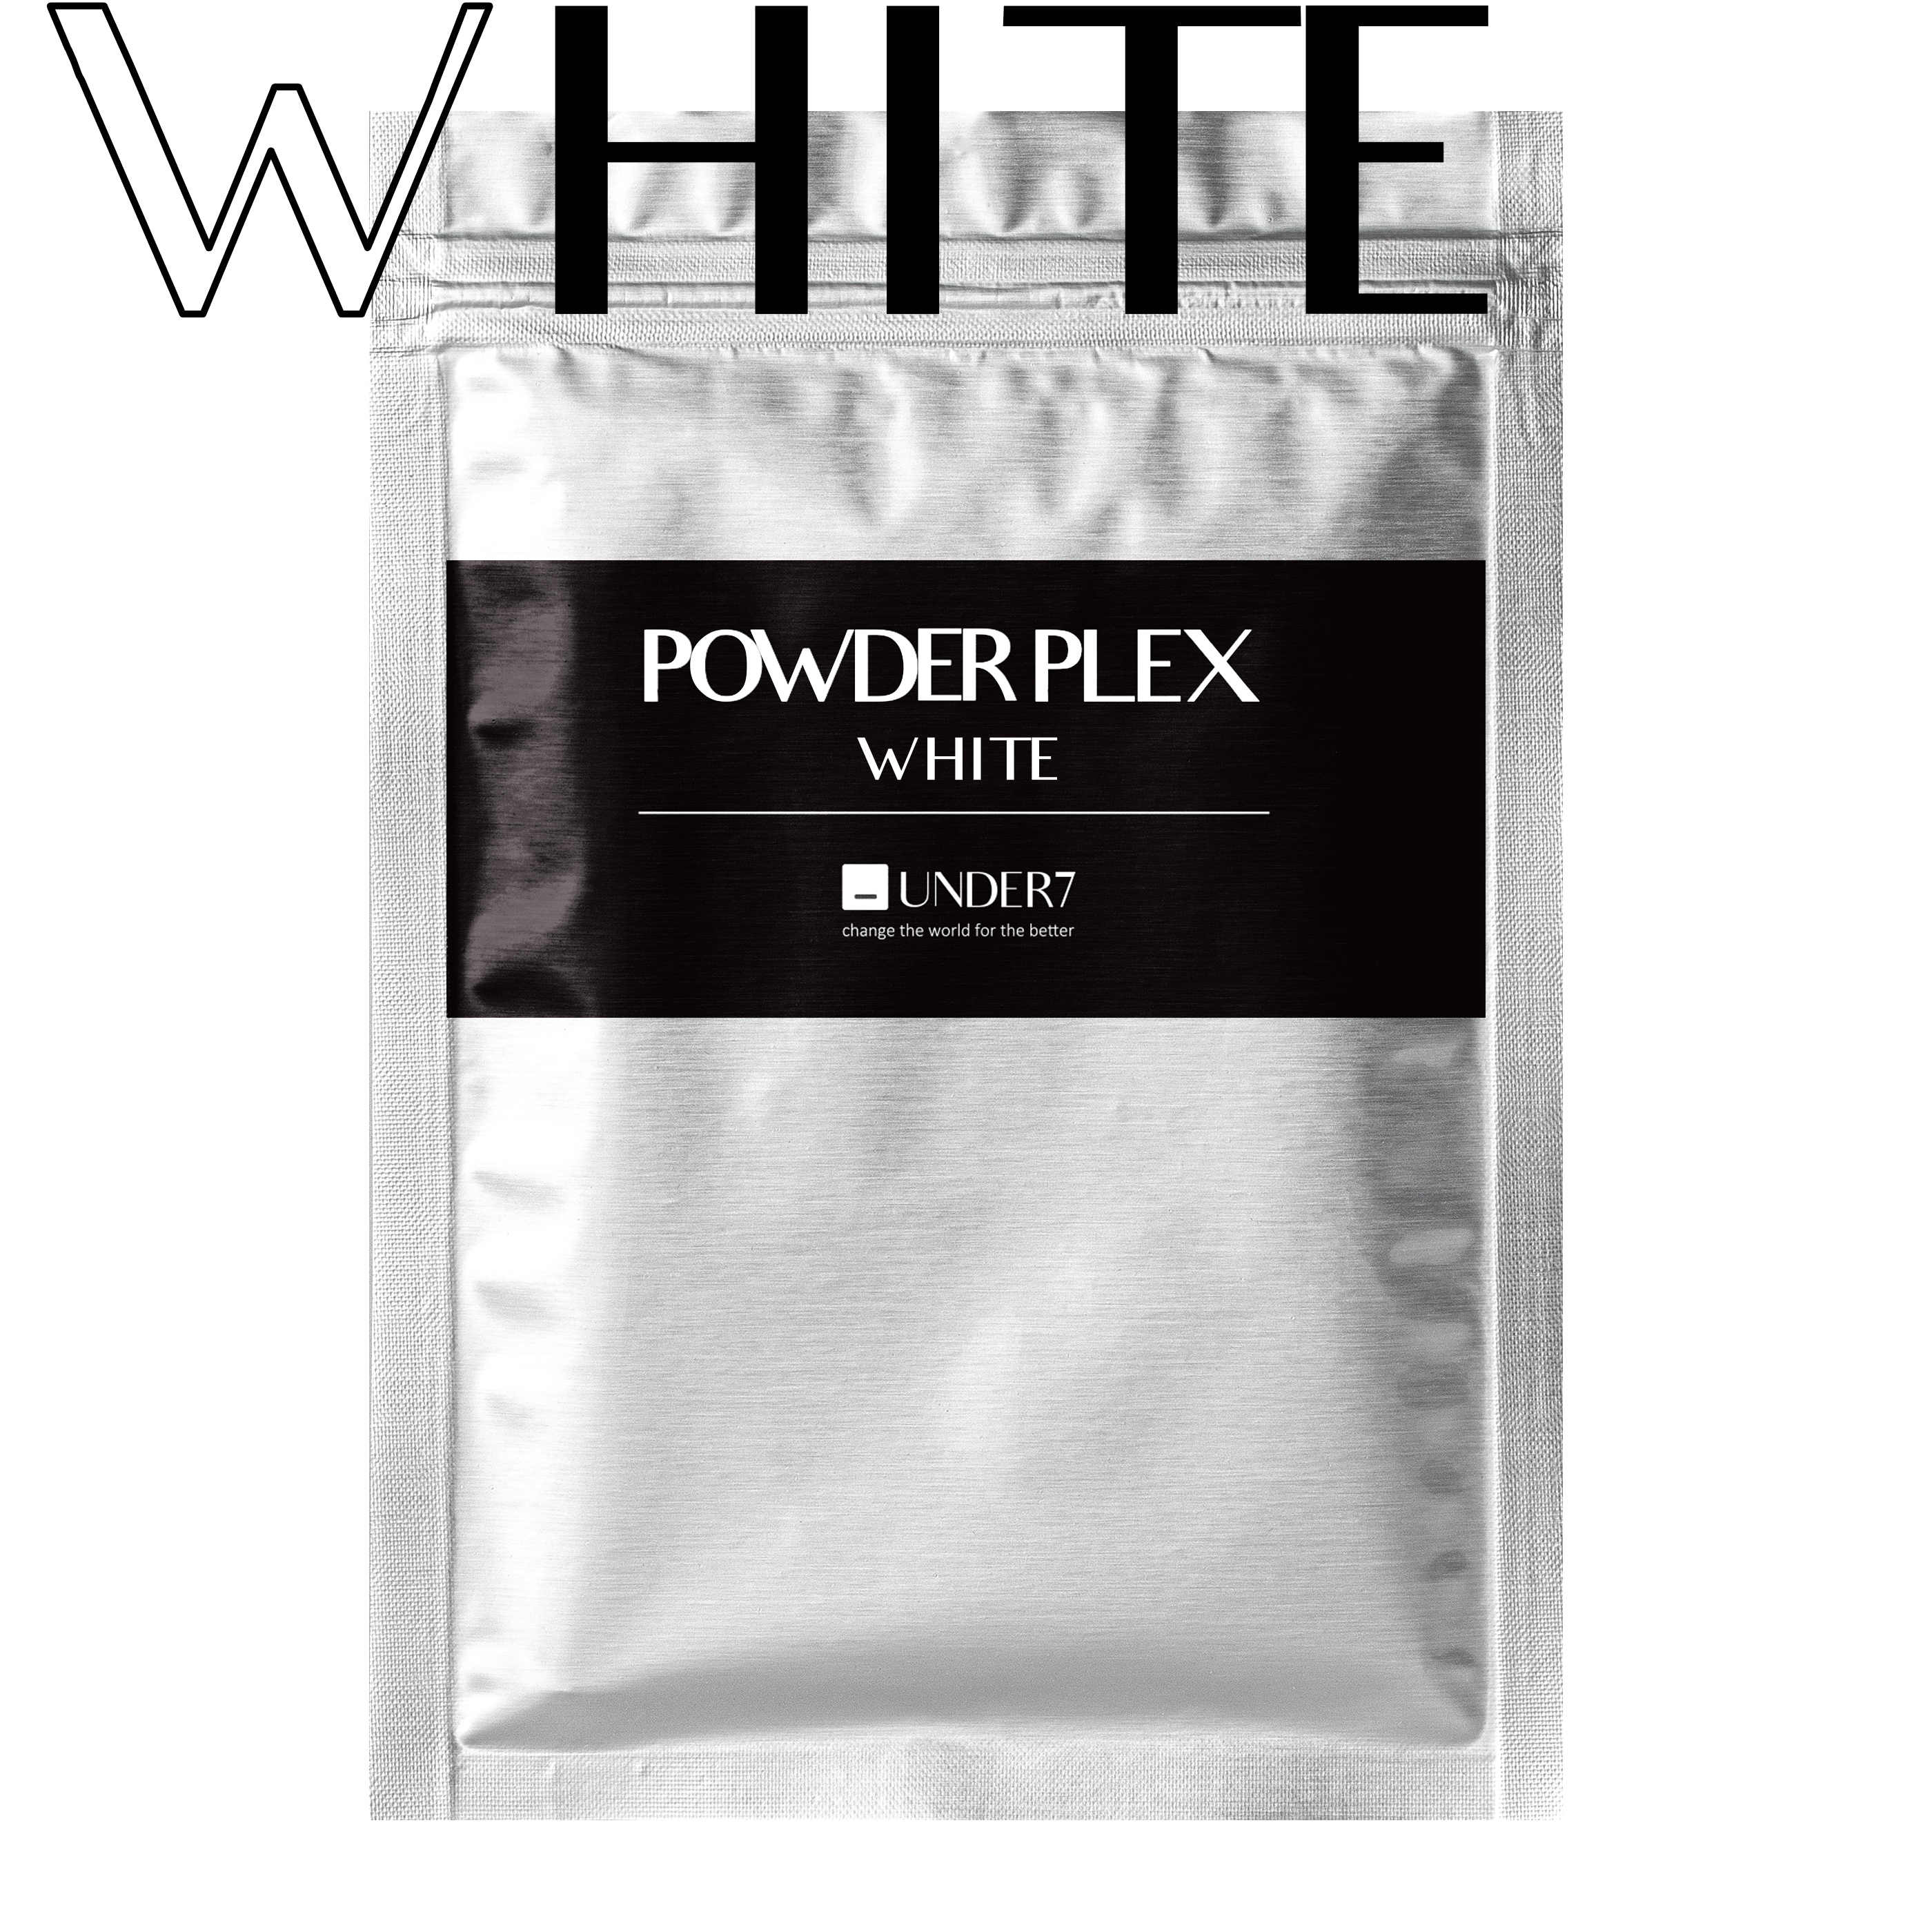 POWDER PLEX WHITE